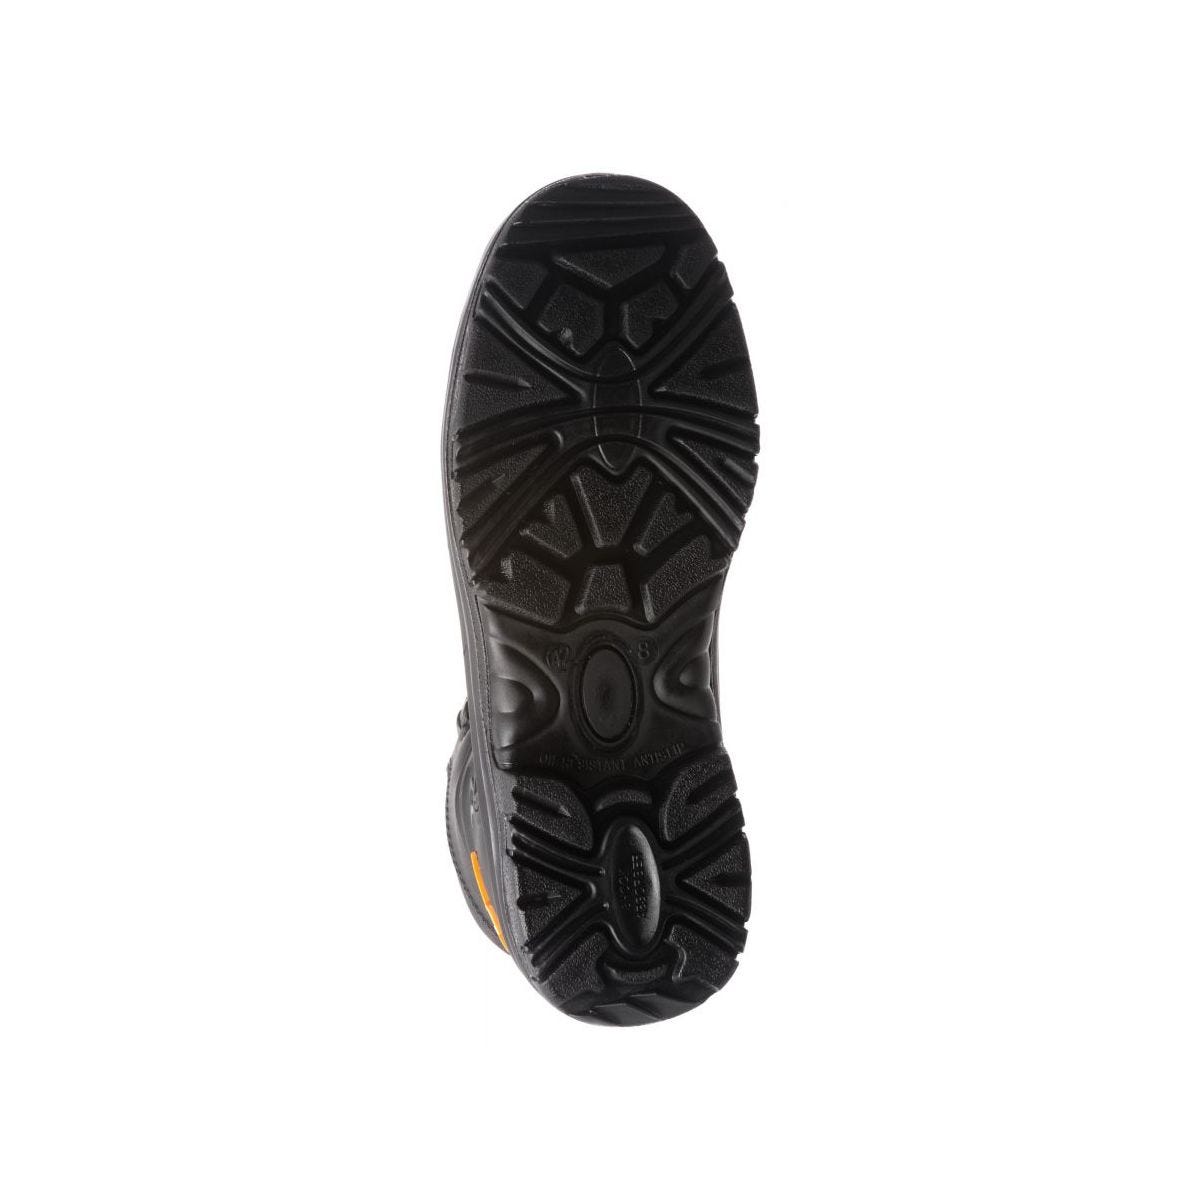 Chaussures de sécurité hautes S3 SRC OPAL composite Noir - Coverguard - Taille 46 4